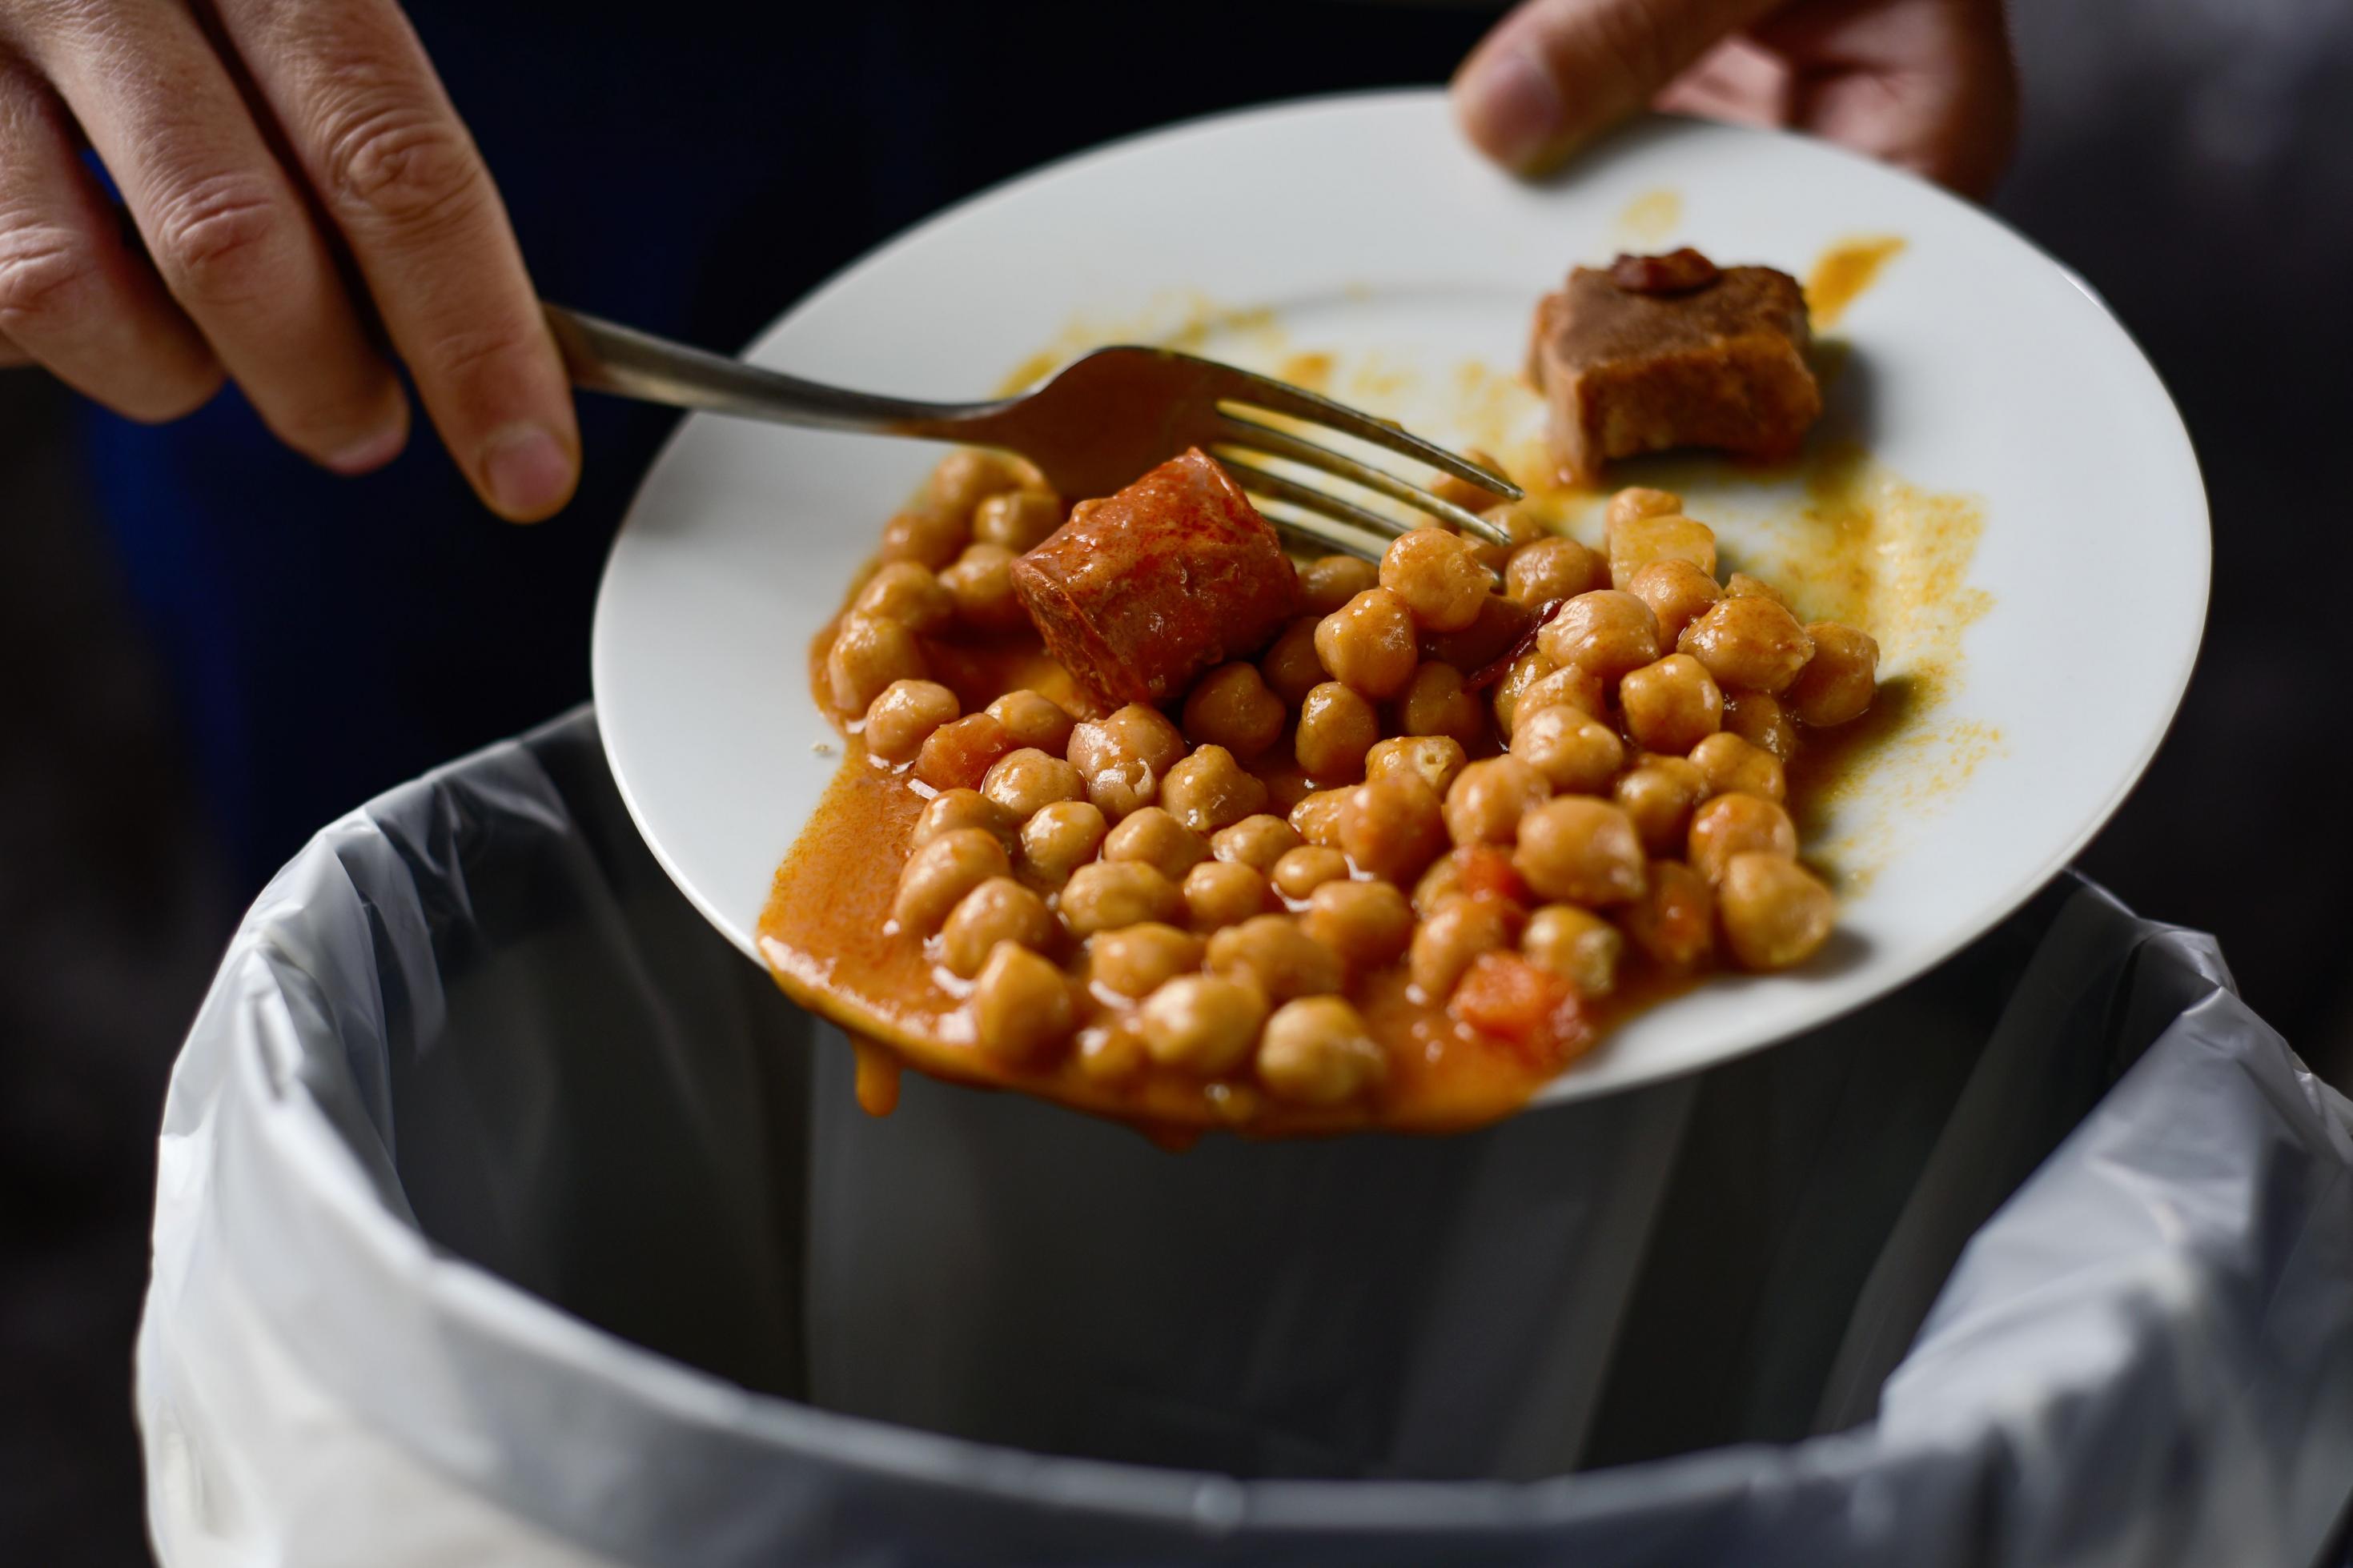 Ein Mann schiebt mit einer Gabel Kichererbsen und Fleisch vom Teller in den Müll. Mehr als die Hälfte aller Lebensmittelabfälle fallen in Privathaushalten an.